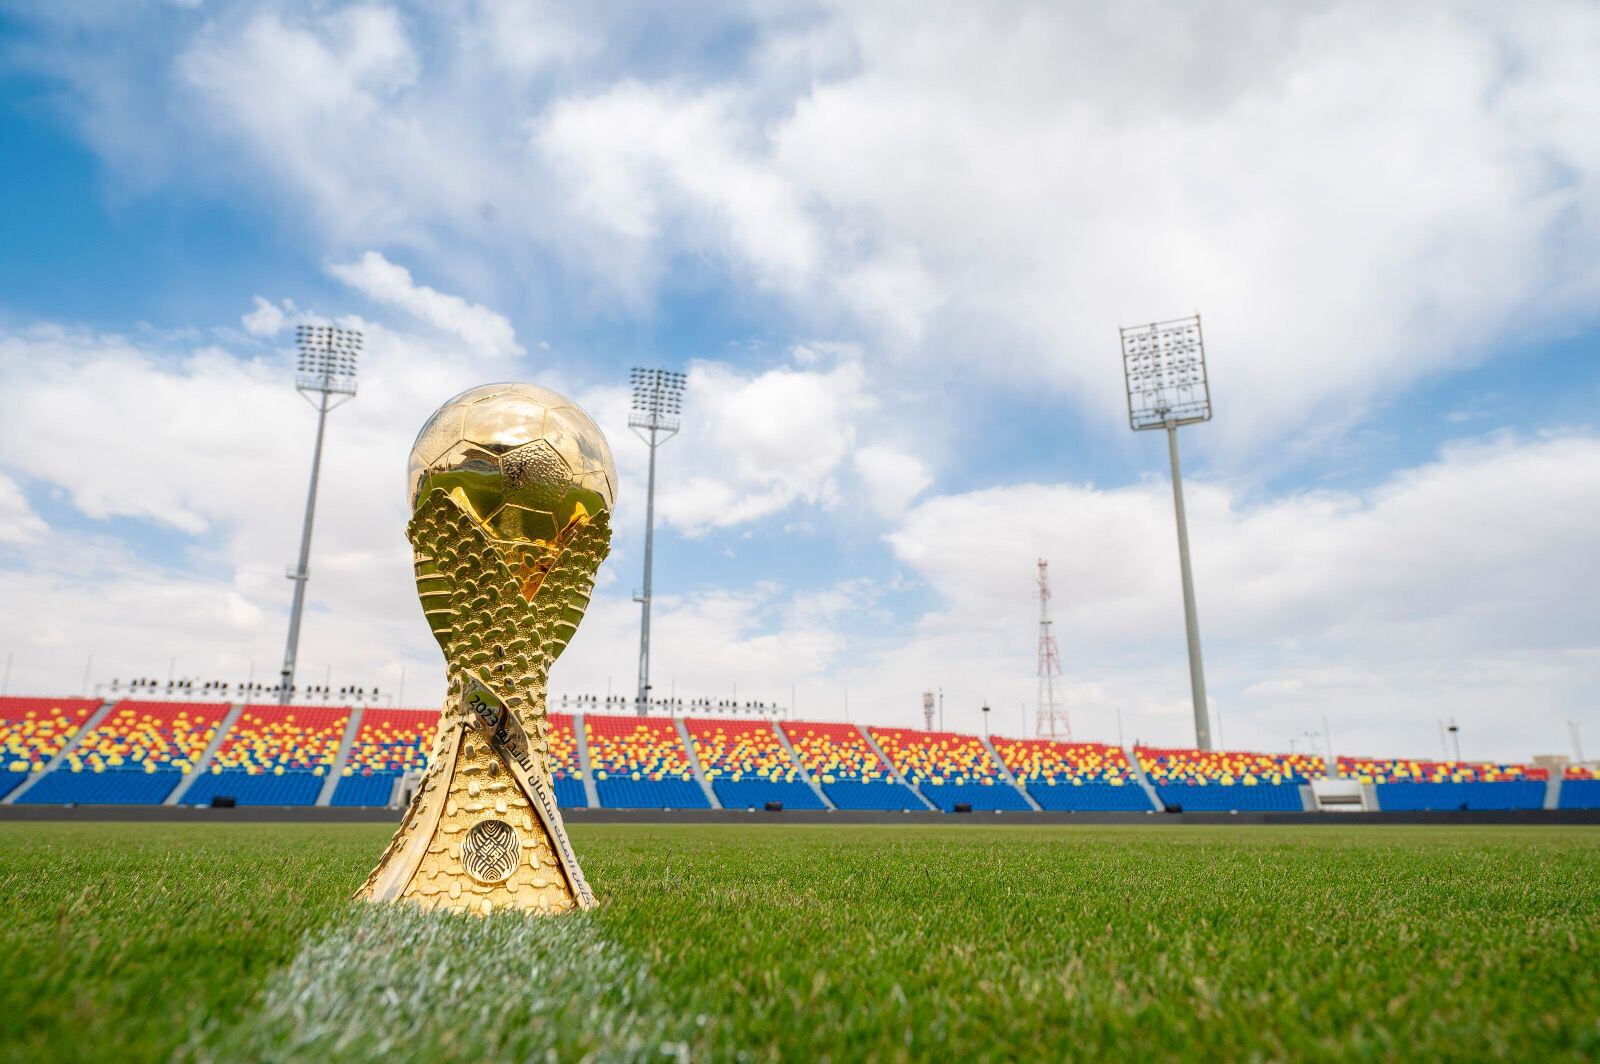 El trofeo del Campeonato de Clubes Árabes con una apariencia similar al del Mundial de Fútbol.